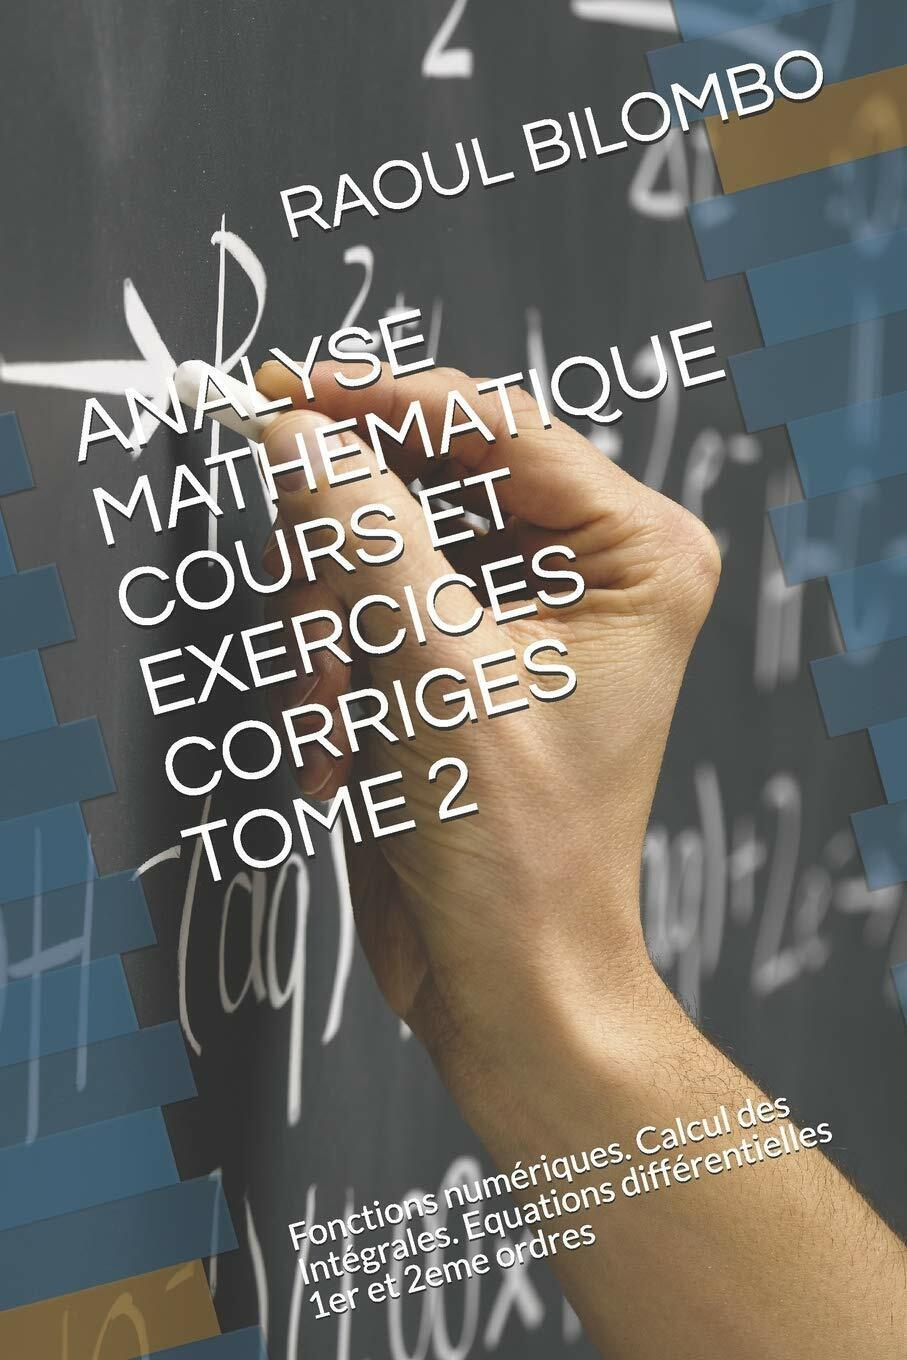 Analyse Mathematique Cours Et Exercices Corriges Tome 2 Fonctions num?riques. Ca